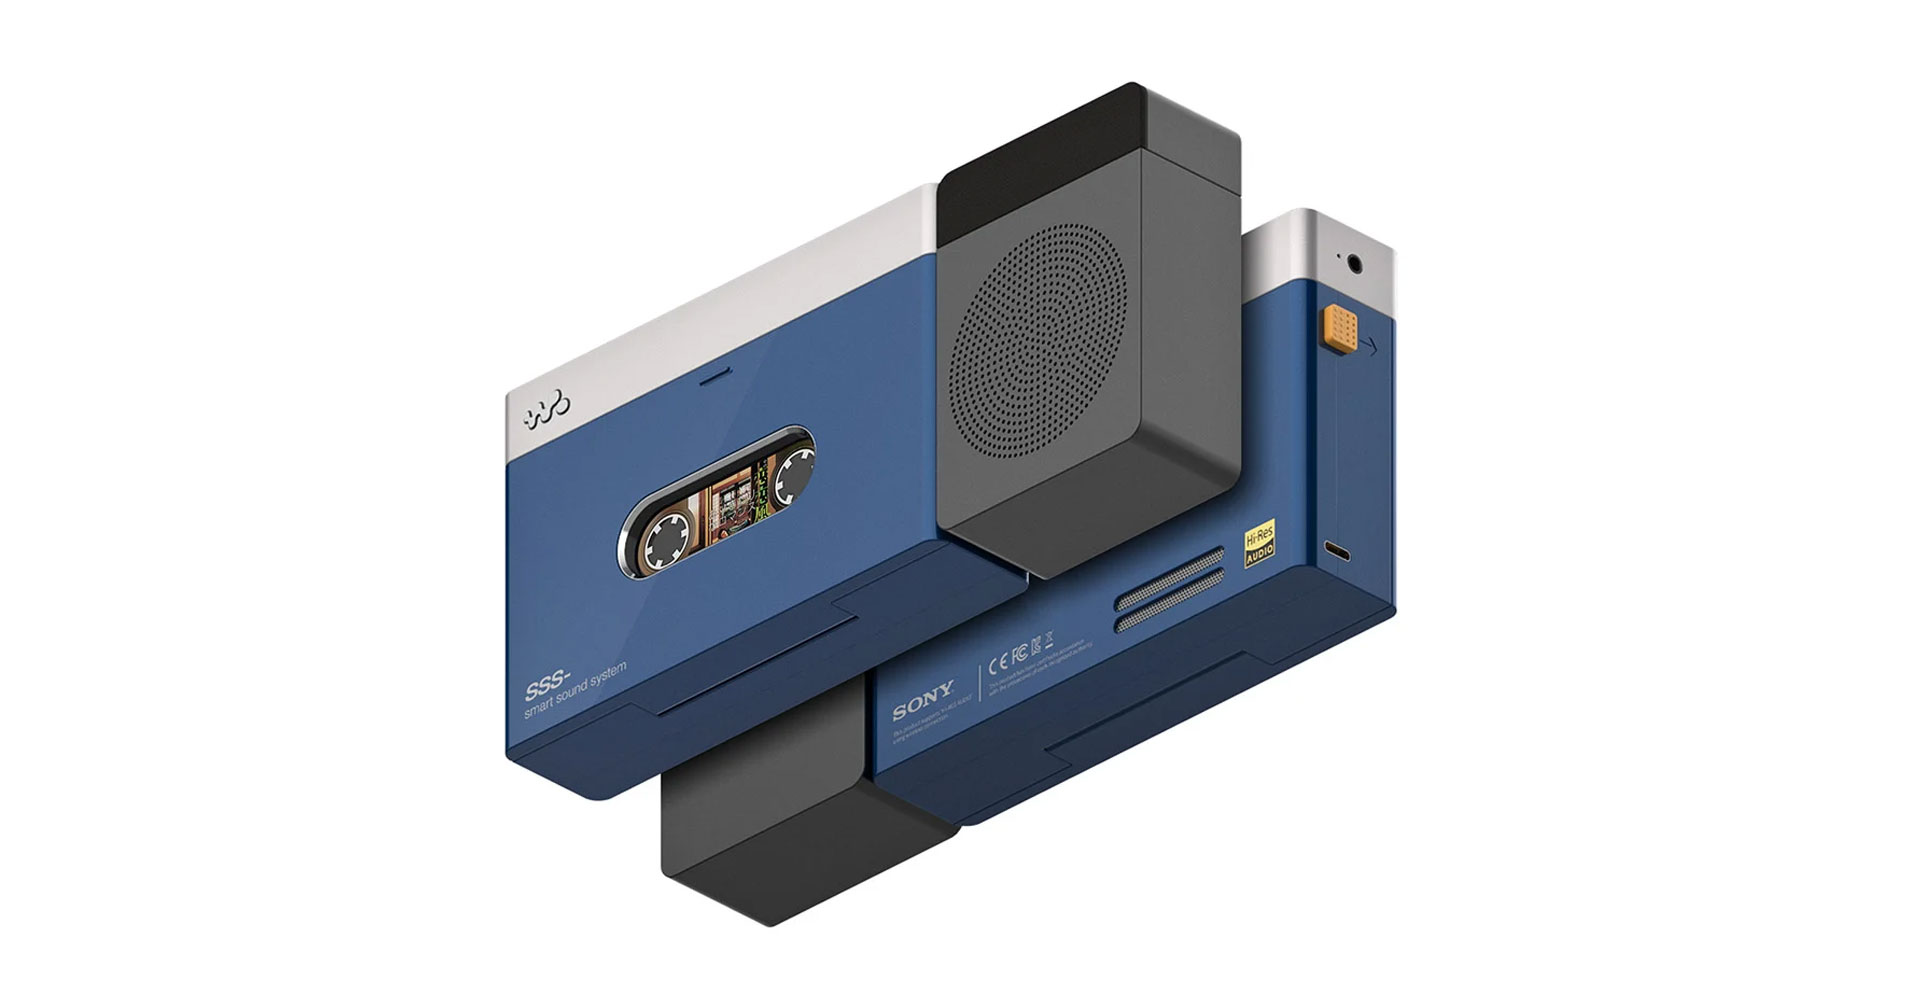 คอนเซปต์ Sony Walkman สุดเท่ เสียบสมาร์ตโฟนแทนเทป ชวนคิดถึงวันวานในยุคแอนะล็อก